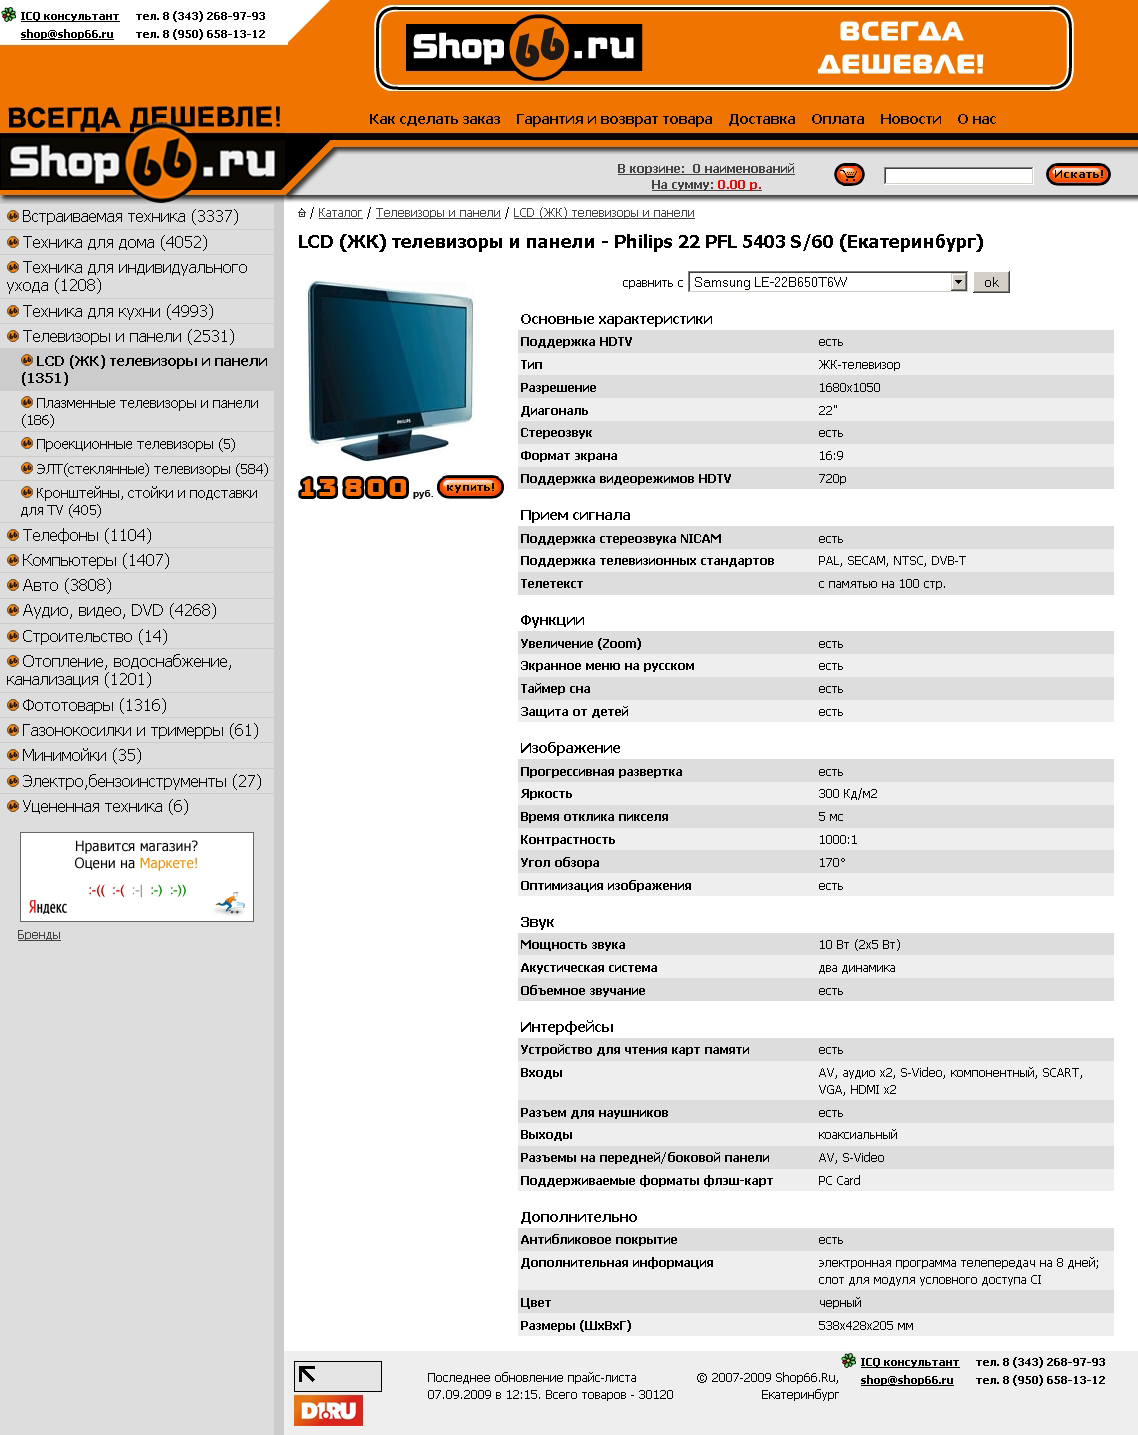 - Shop66.ru.